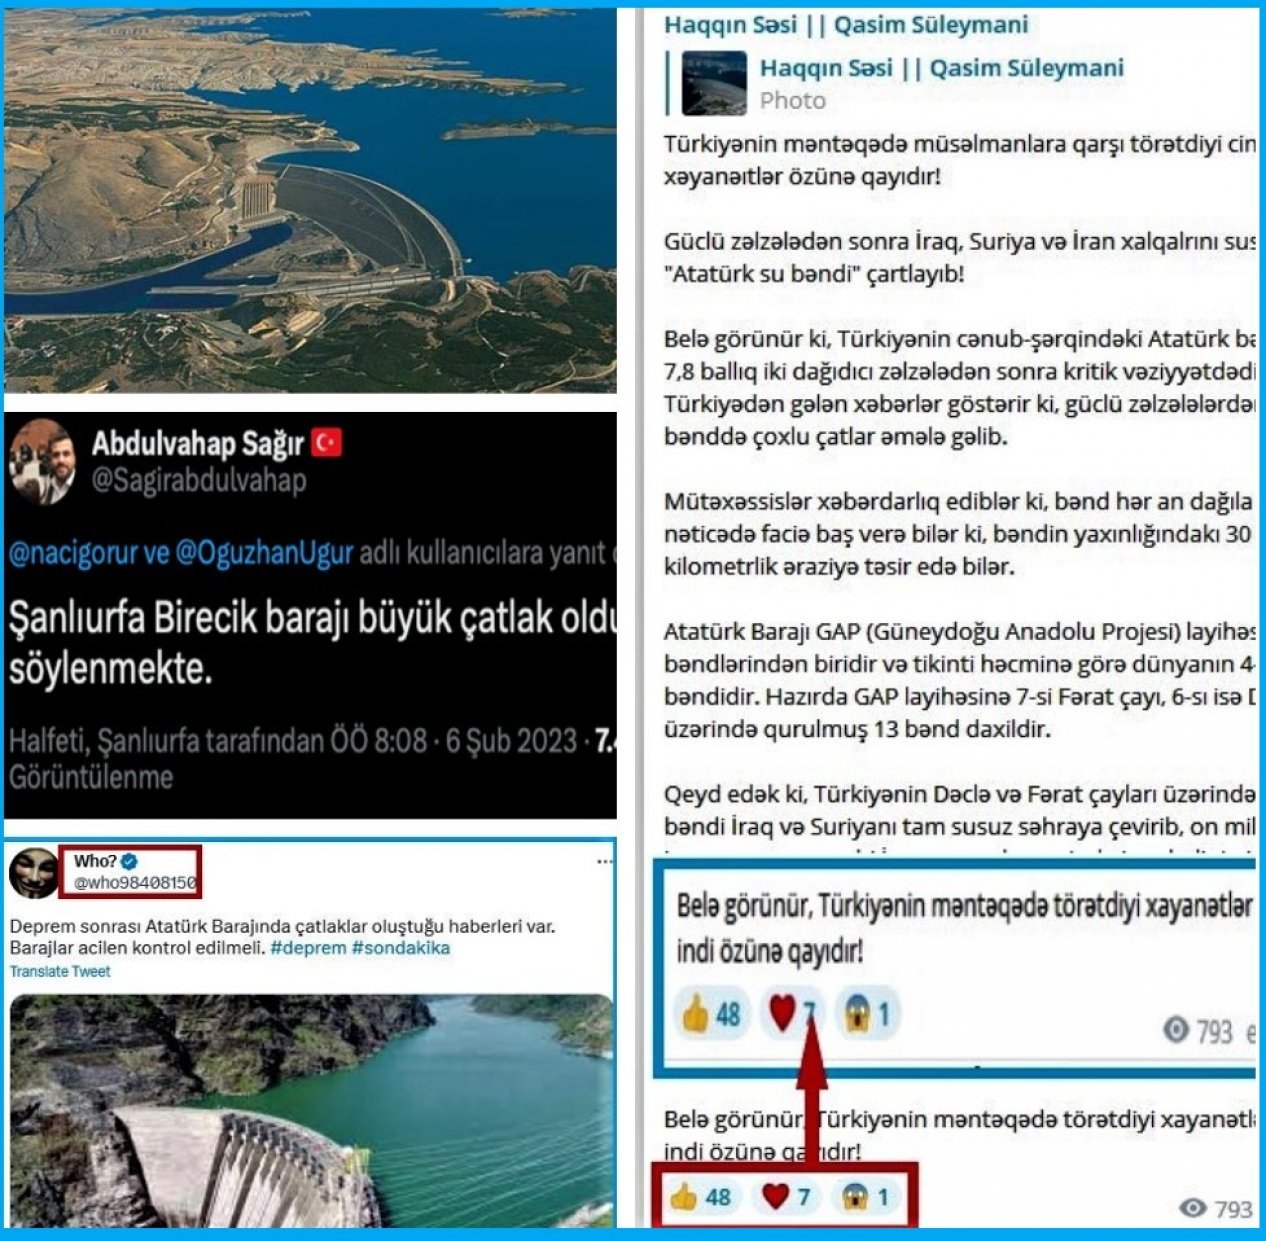 Утверждения о переполнении водохранилищ в районе землетрясения в Турции необоснованны